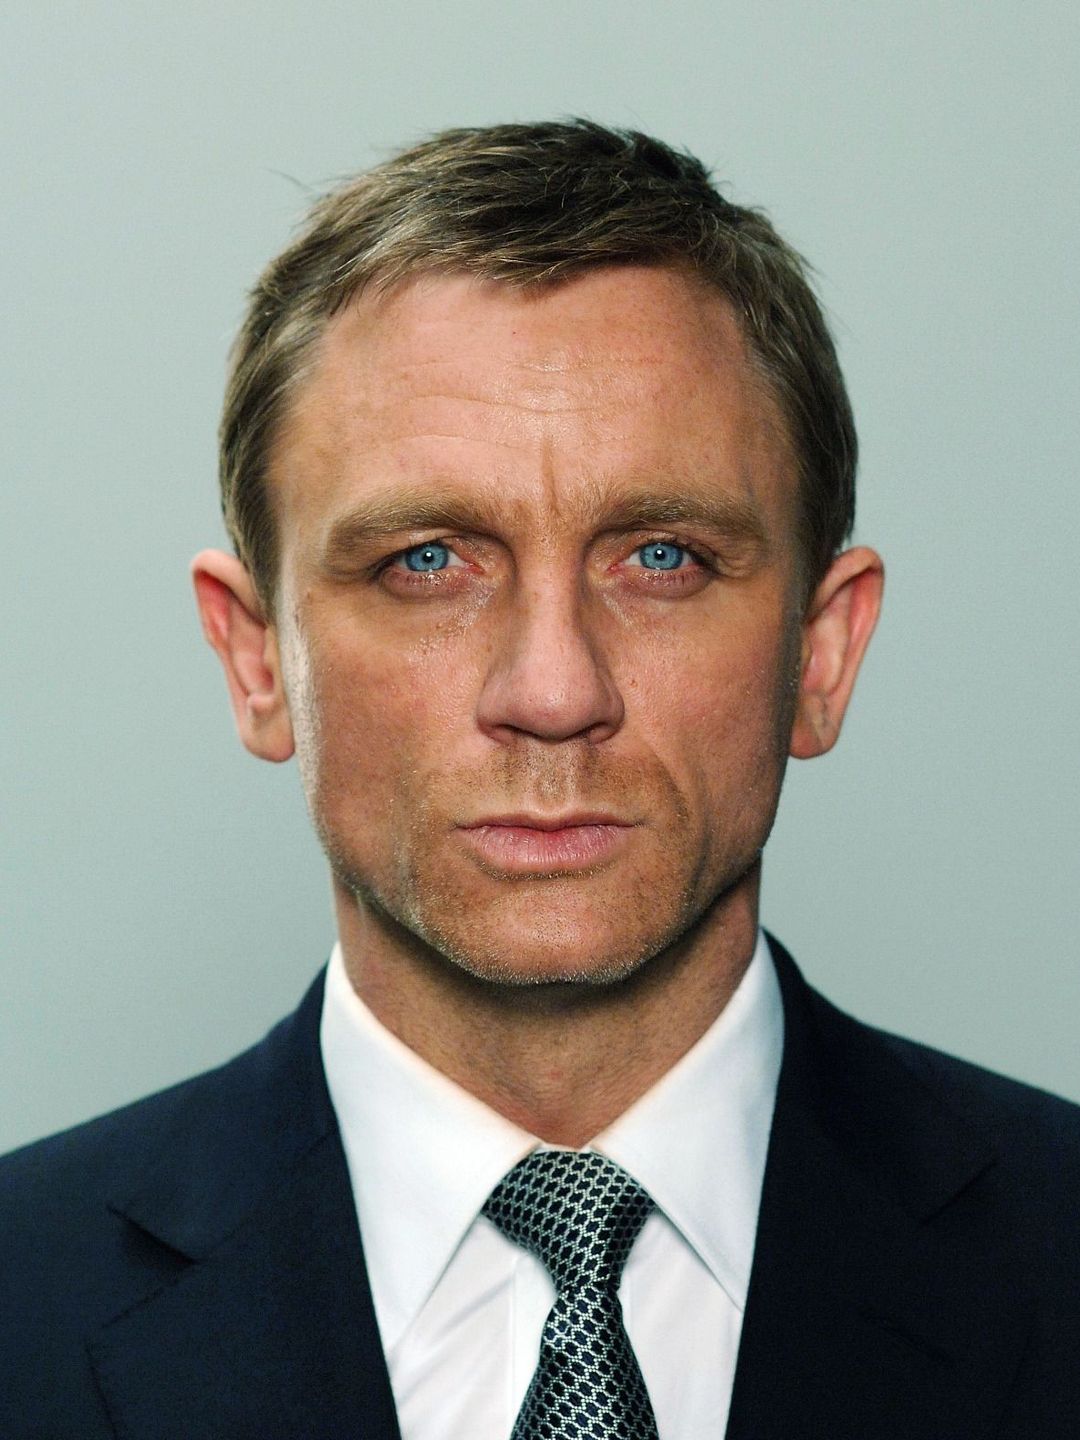 Daniel Craig main achievements